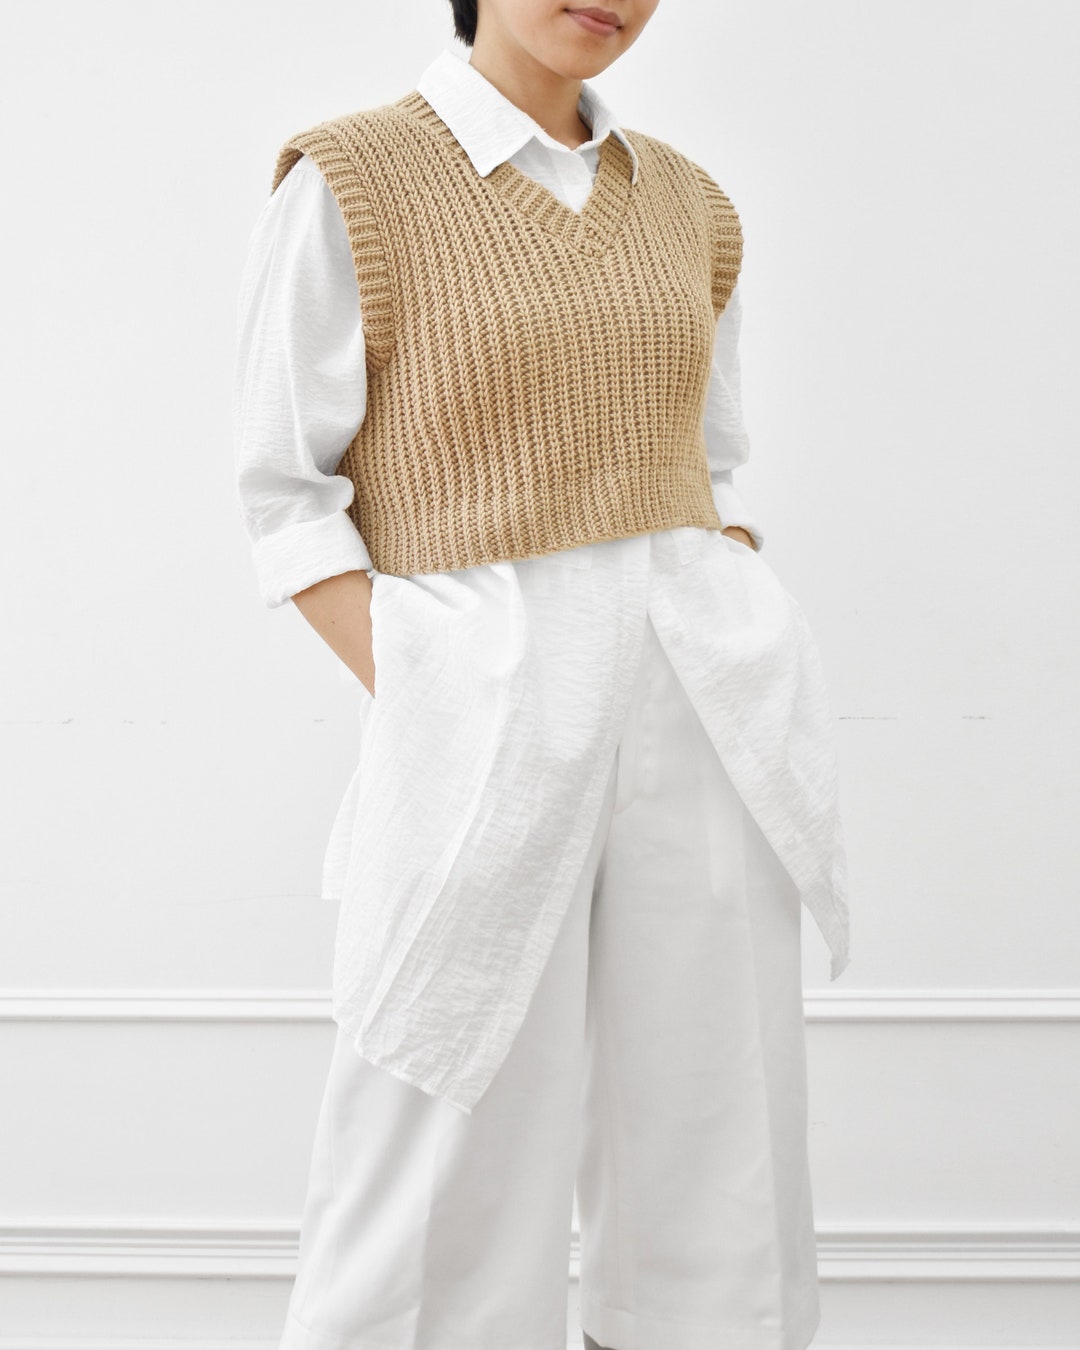 Crochet Cropped Vest Pattern, Crochet Sweater Pattern, Easy